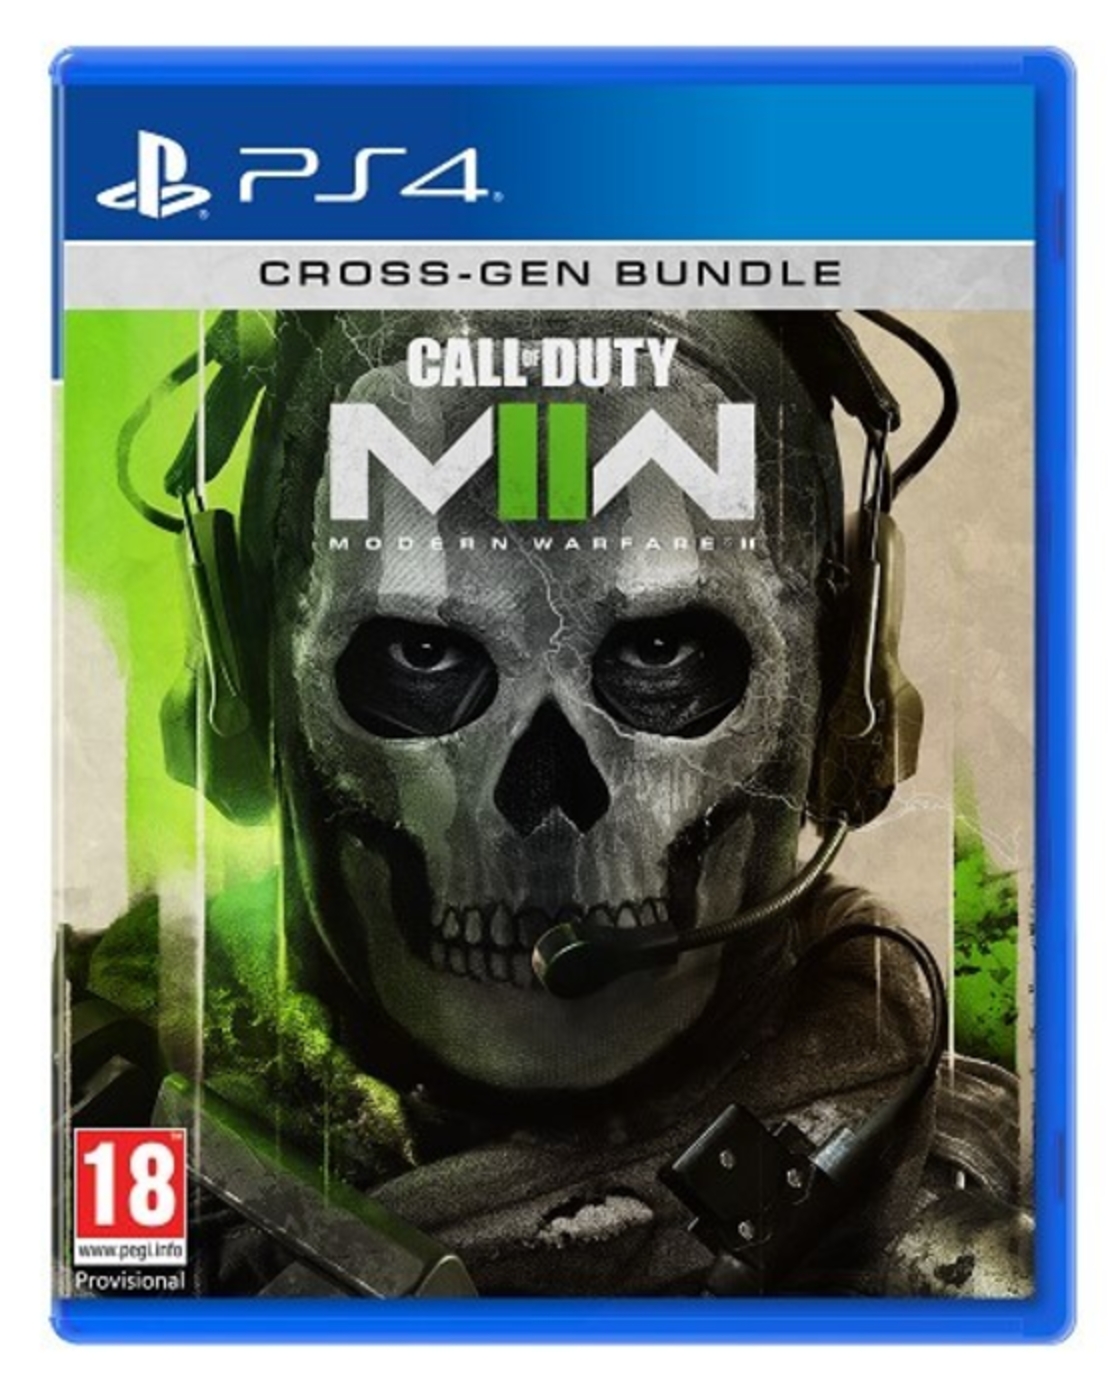 Call of Duty Modern Warfare II - PS4 - הזמנה מוקדמת